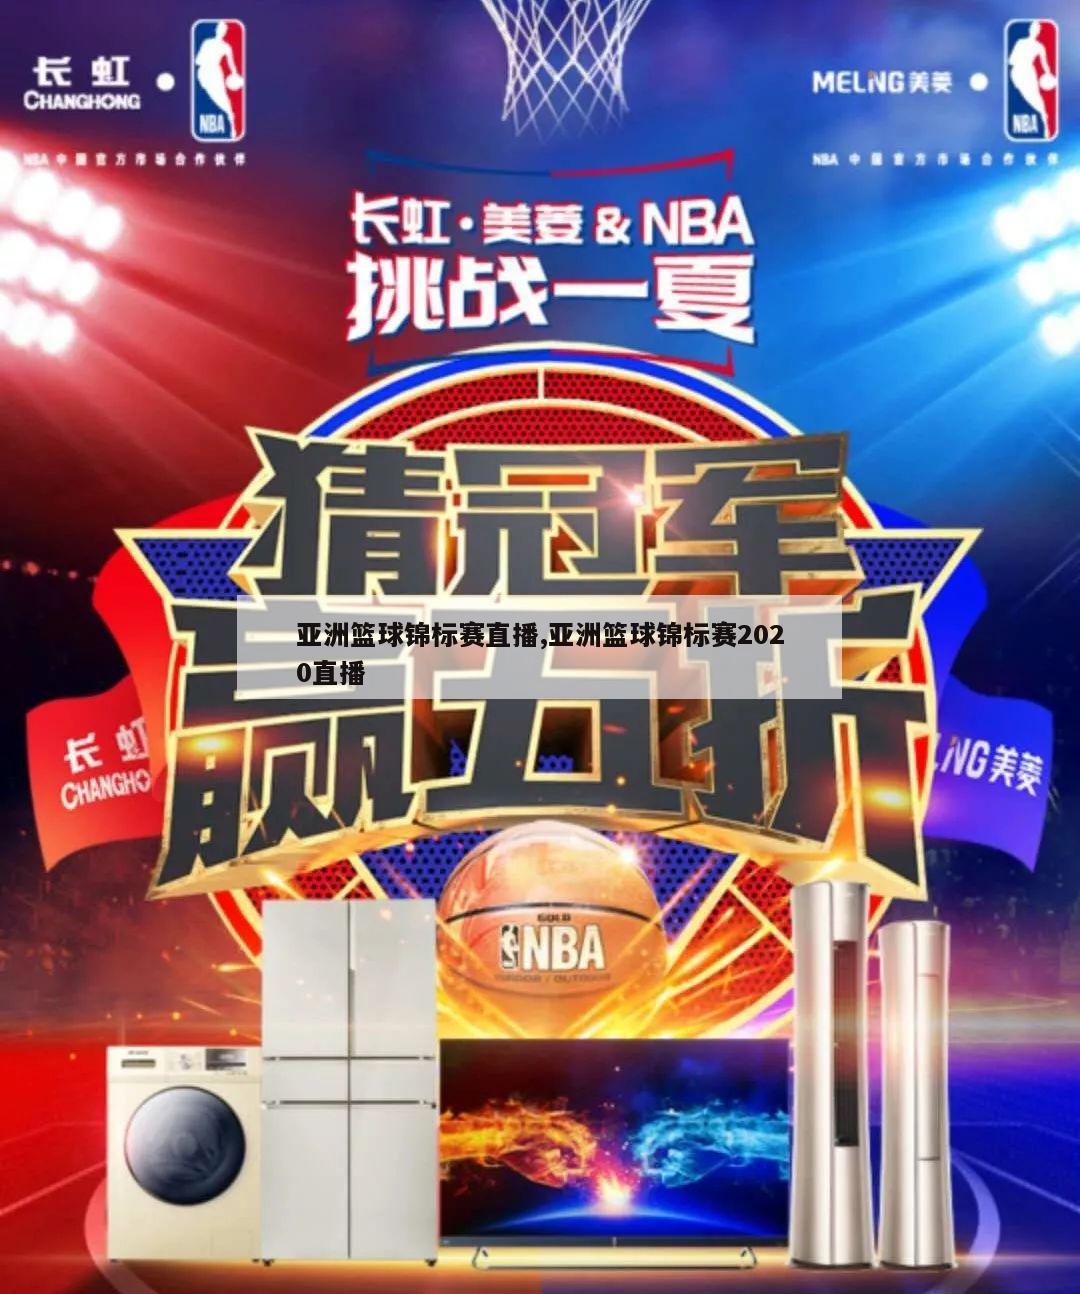 亚洲篮球锦标赛直播,亚洲篮球锦标赛2020直播